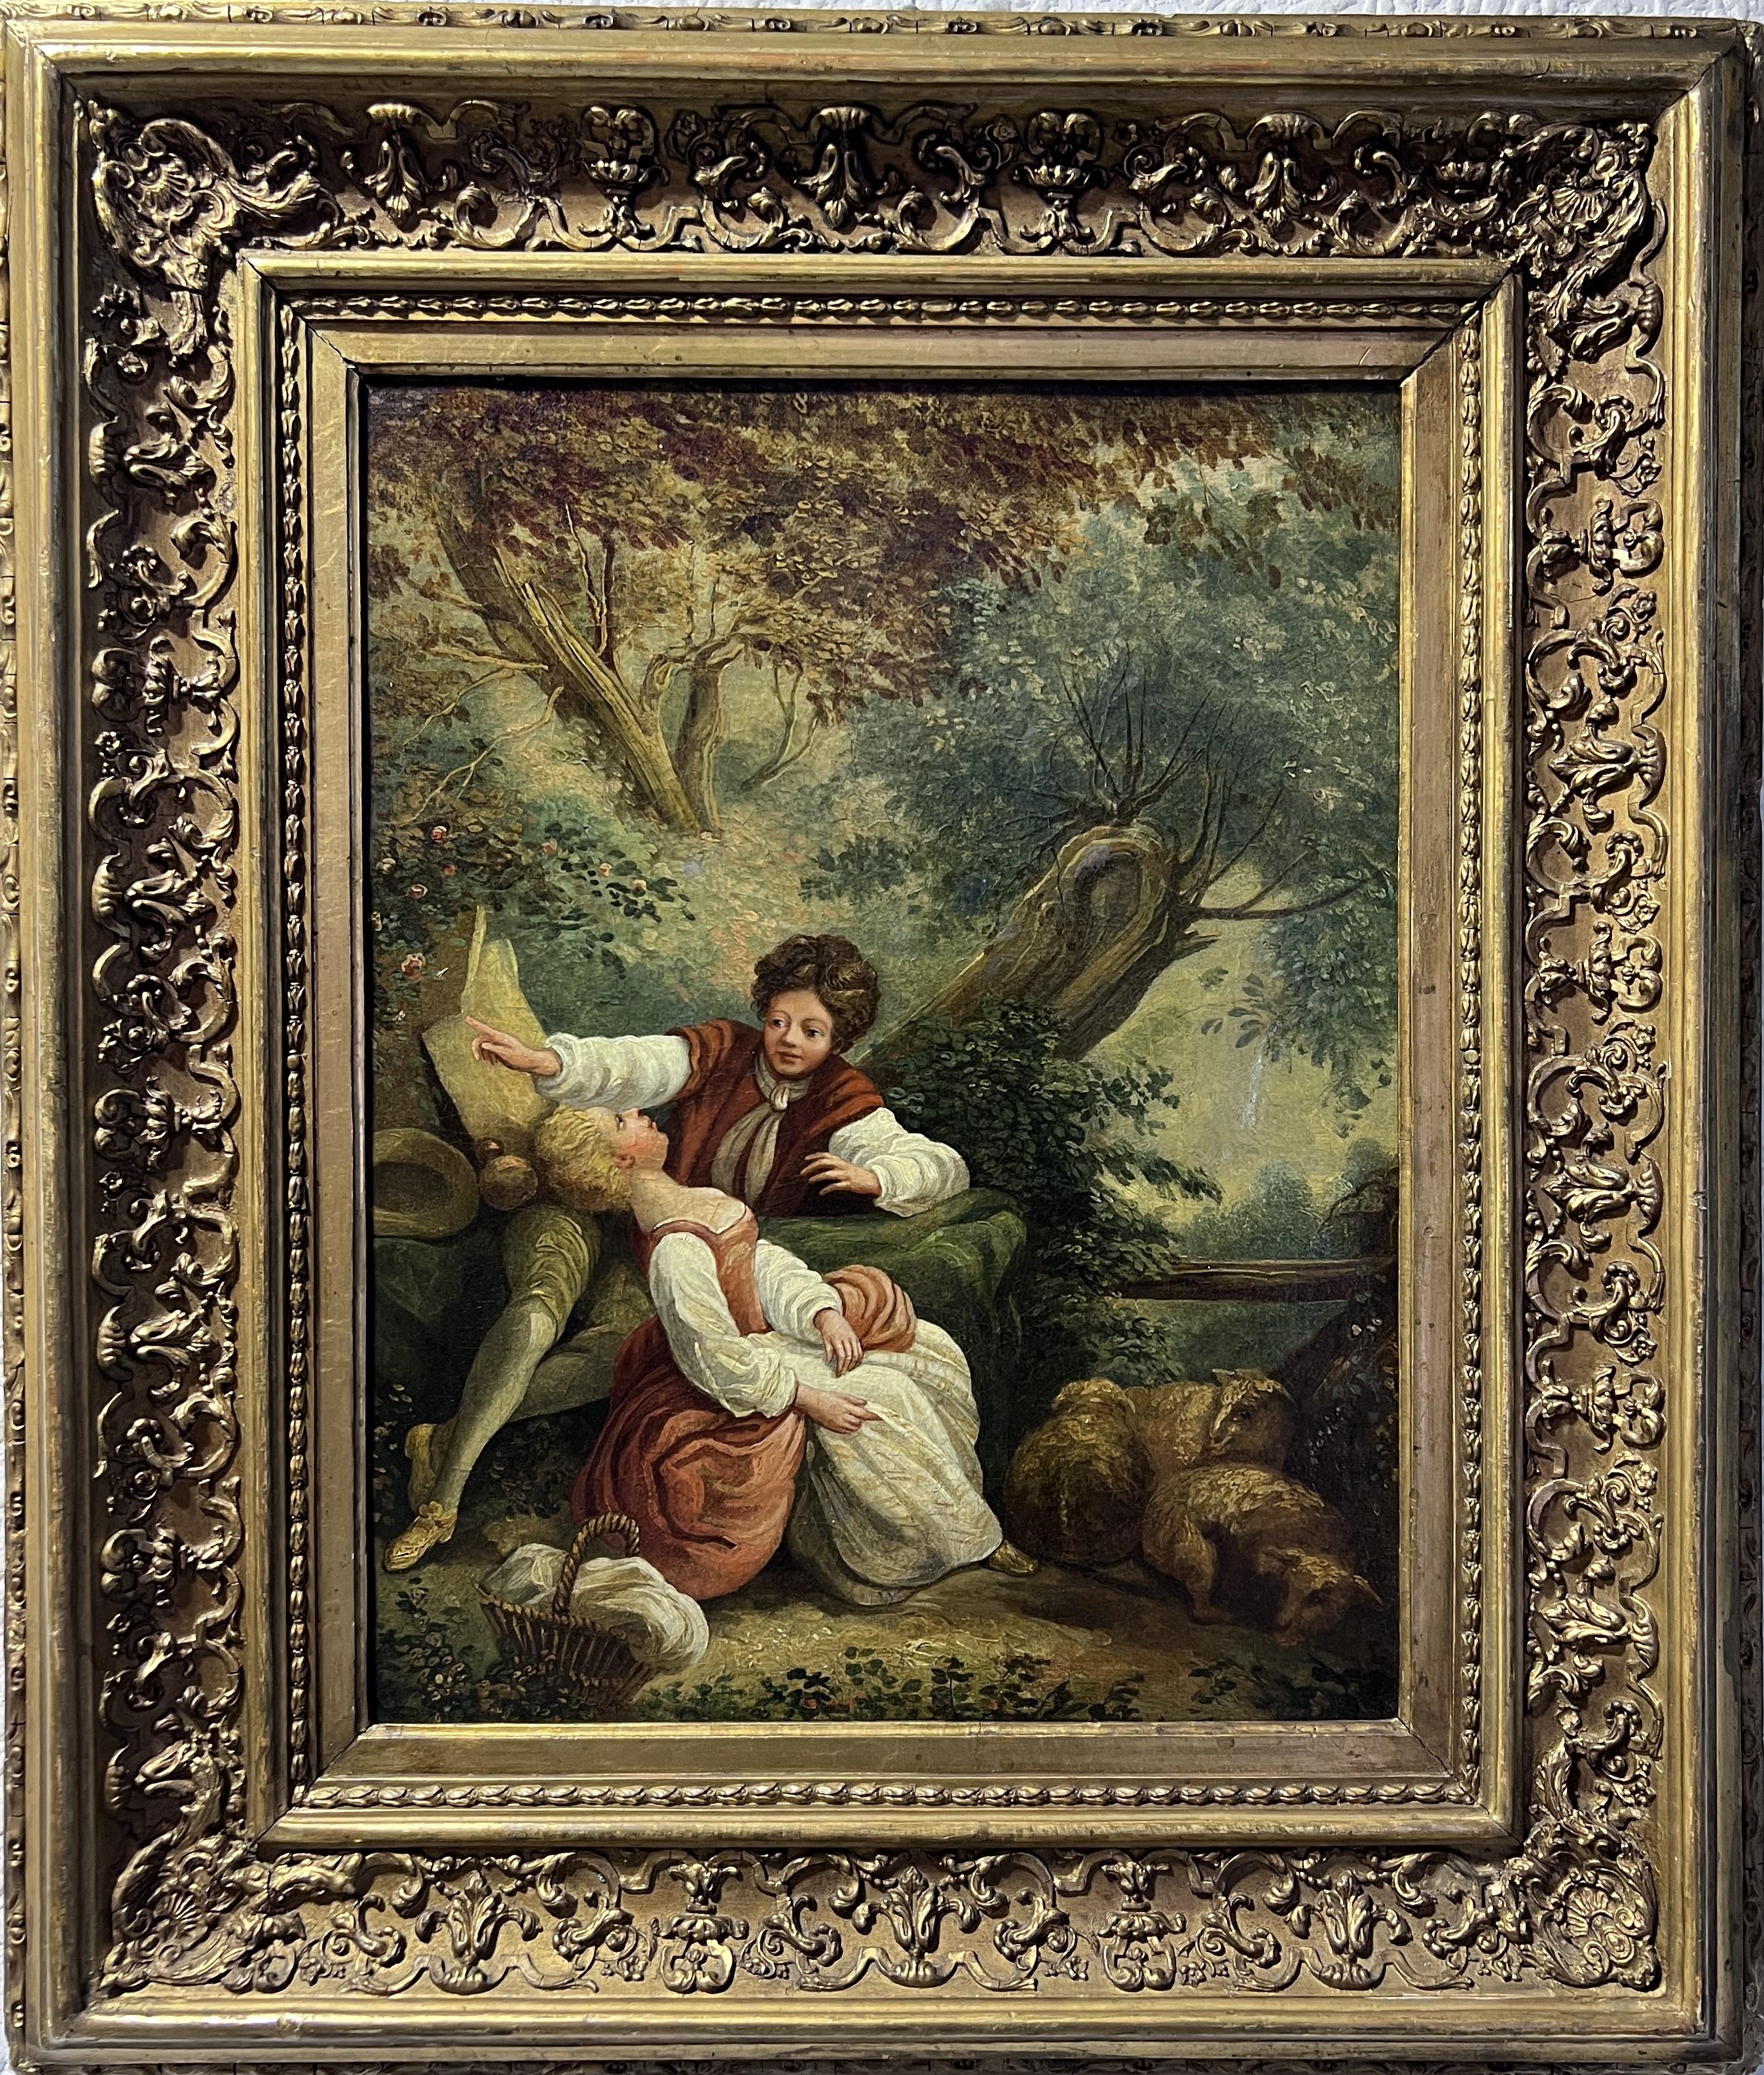 Portrait Painting Unknown - Peinture à l'huile originale française du 18/19e siècle sur toile, rococo, encadrée